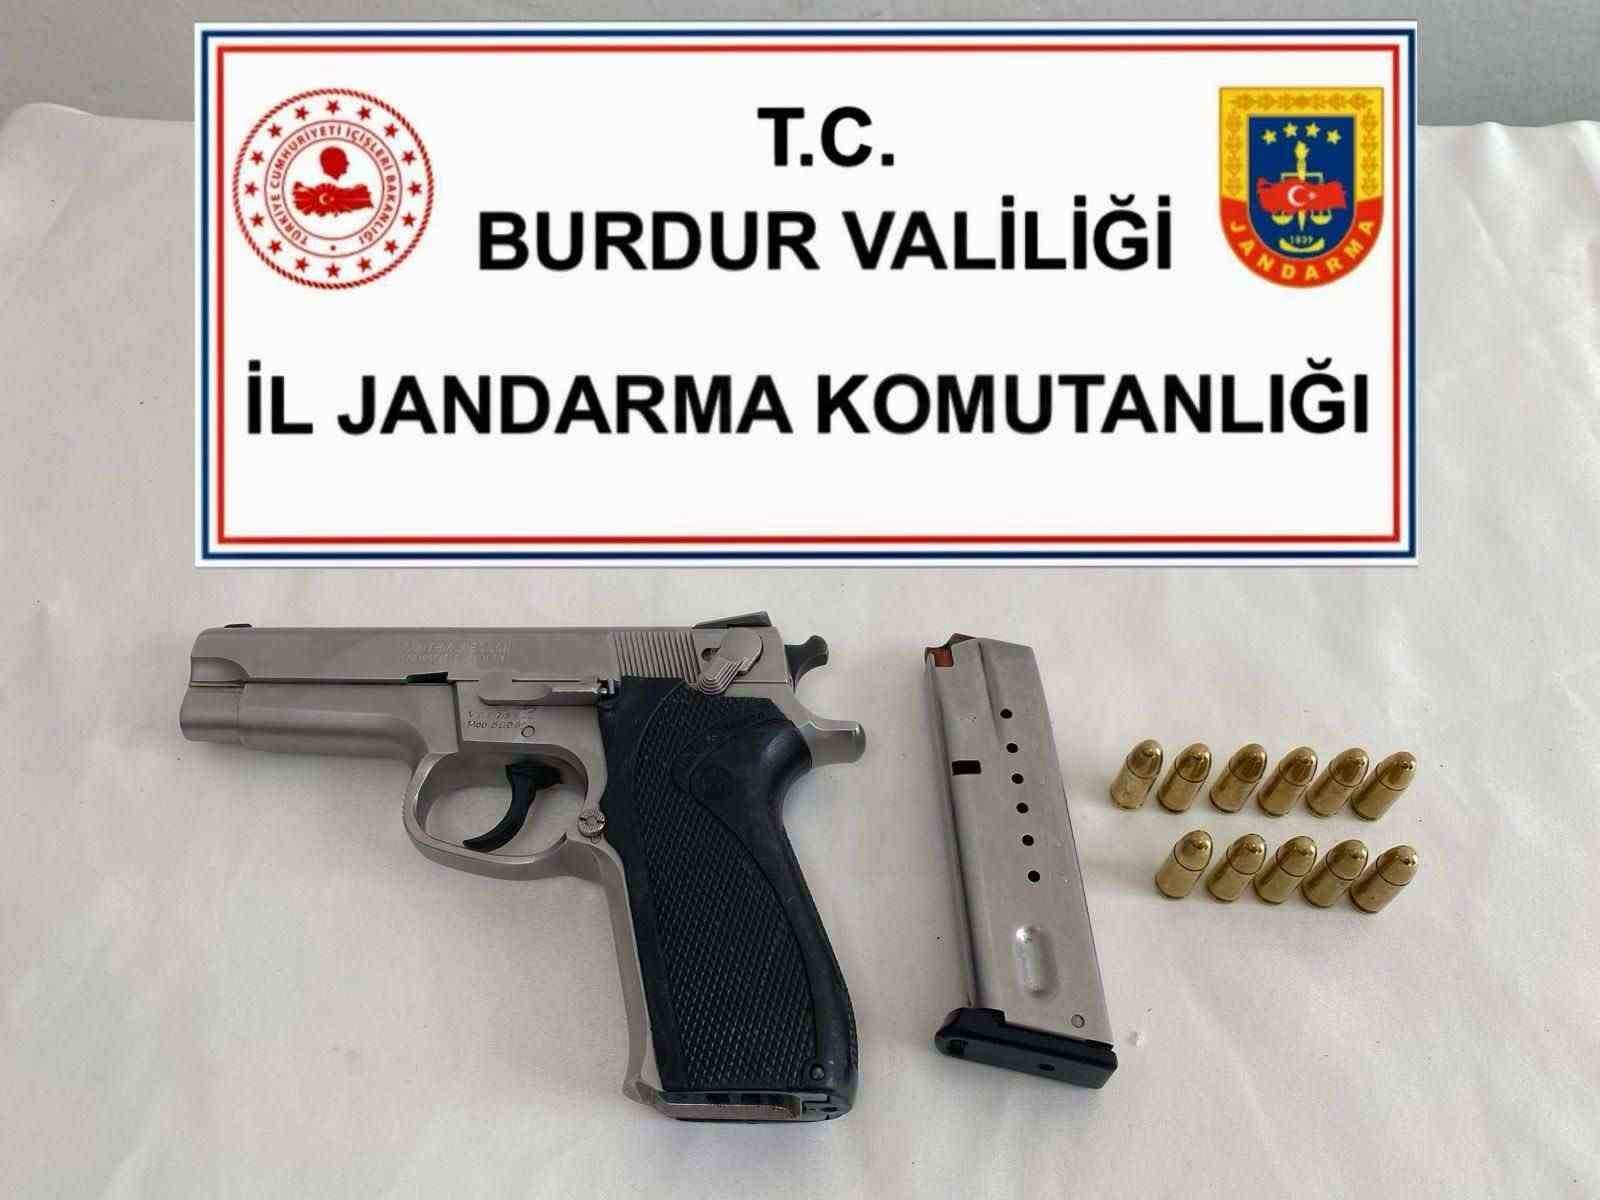 Burdur’da uyuşturucu ve kaçakçılık operasyonlarında 4 kişi tutuklandı
